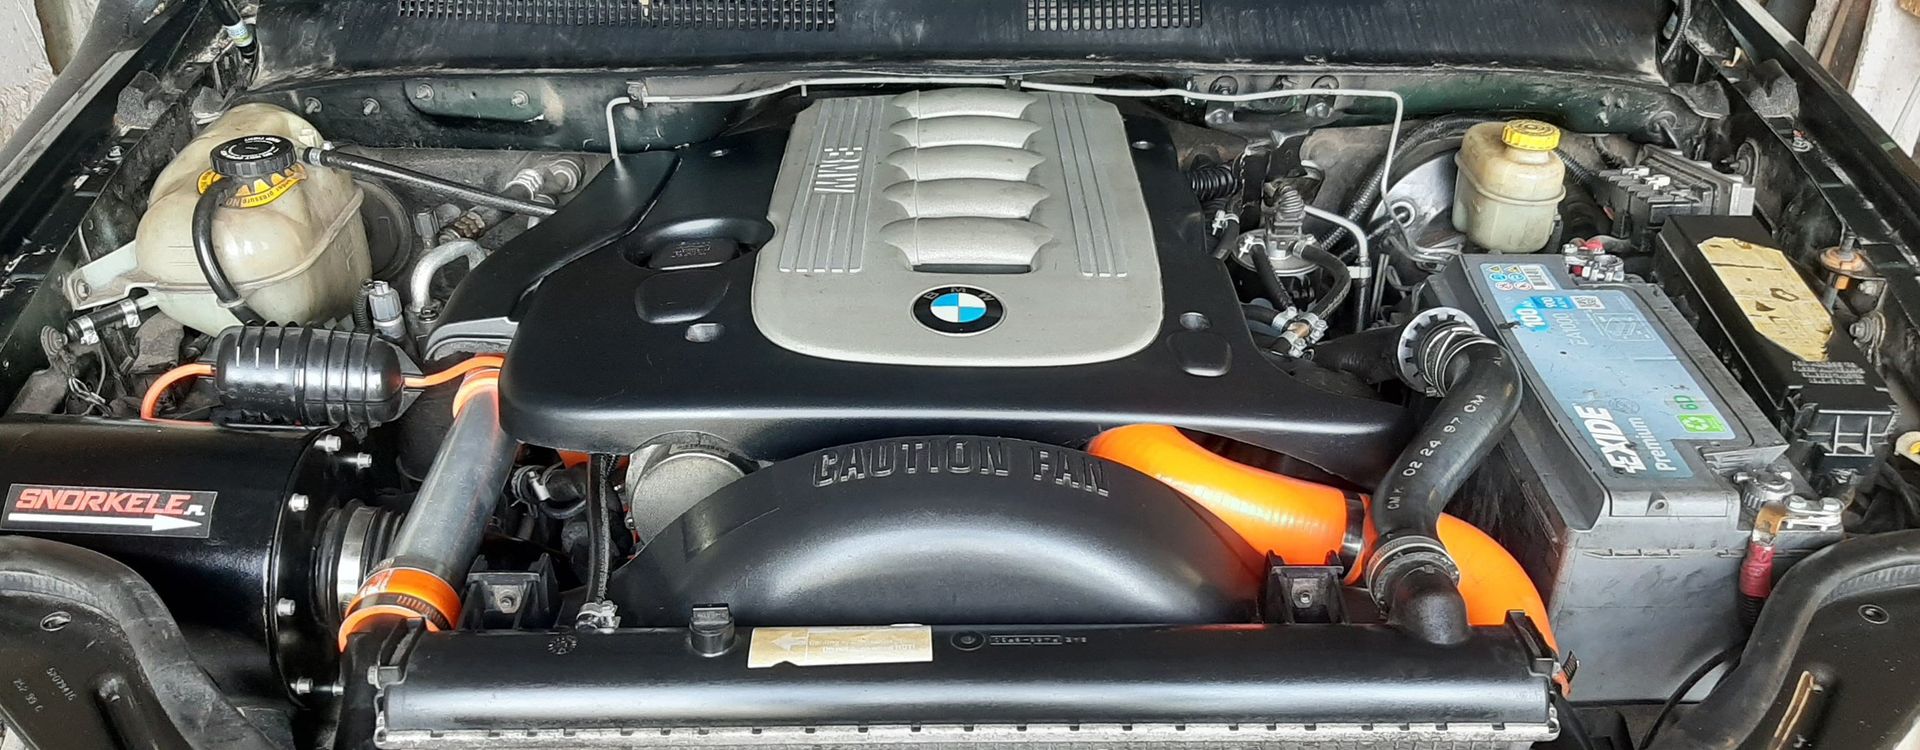 3litrowy diesel BMW M57 opinie, usterki, wady, zalety